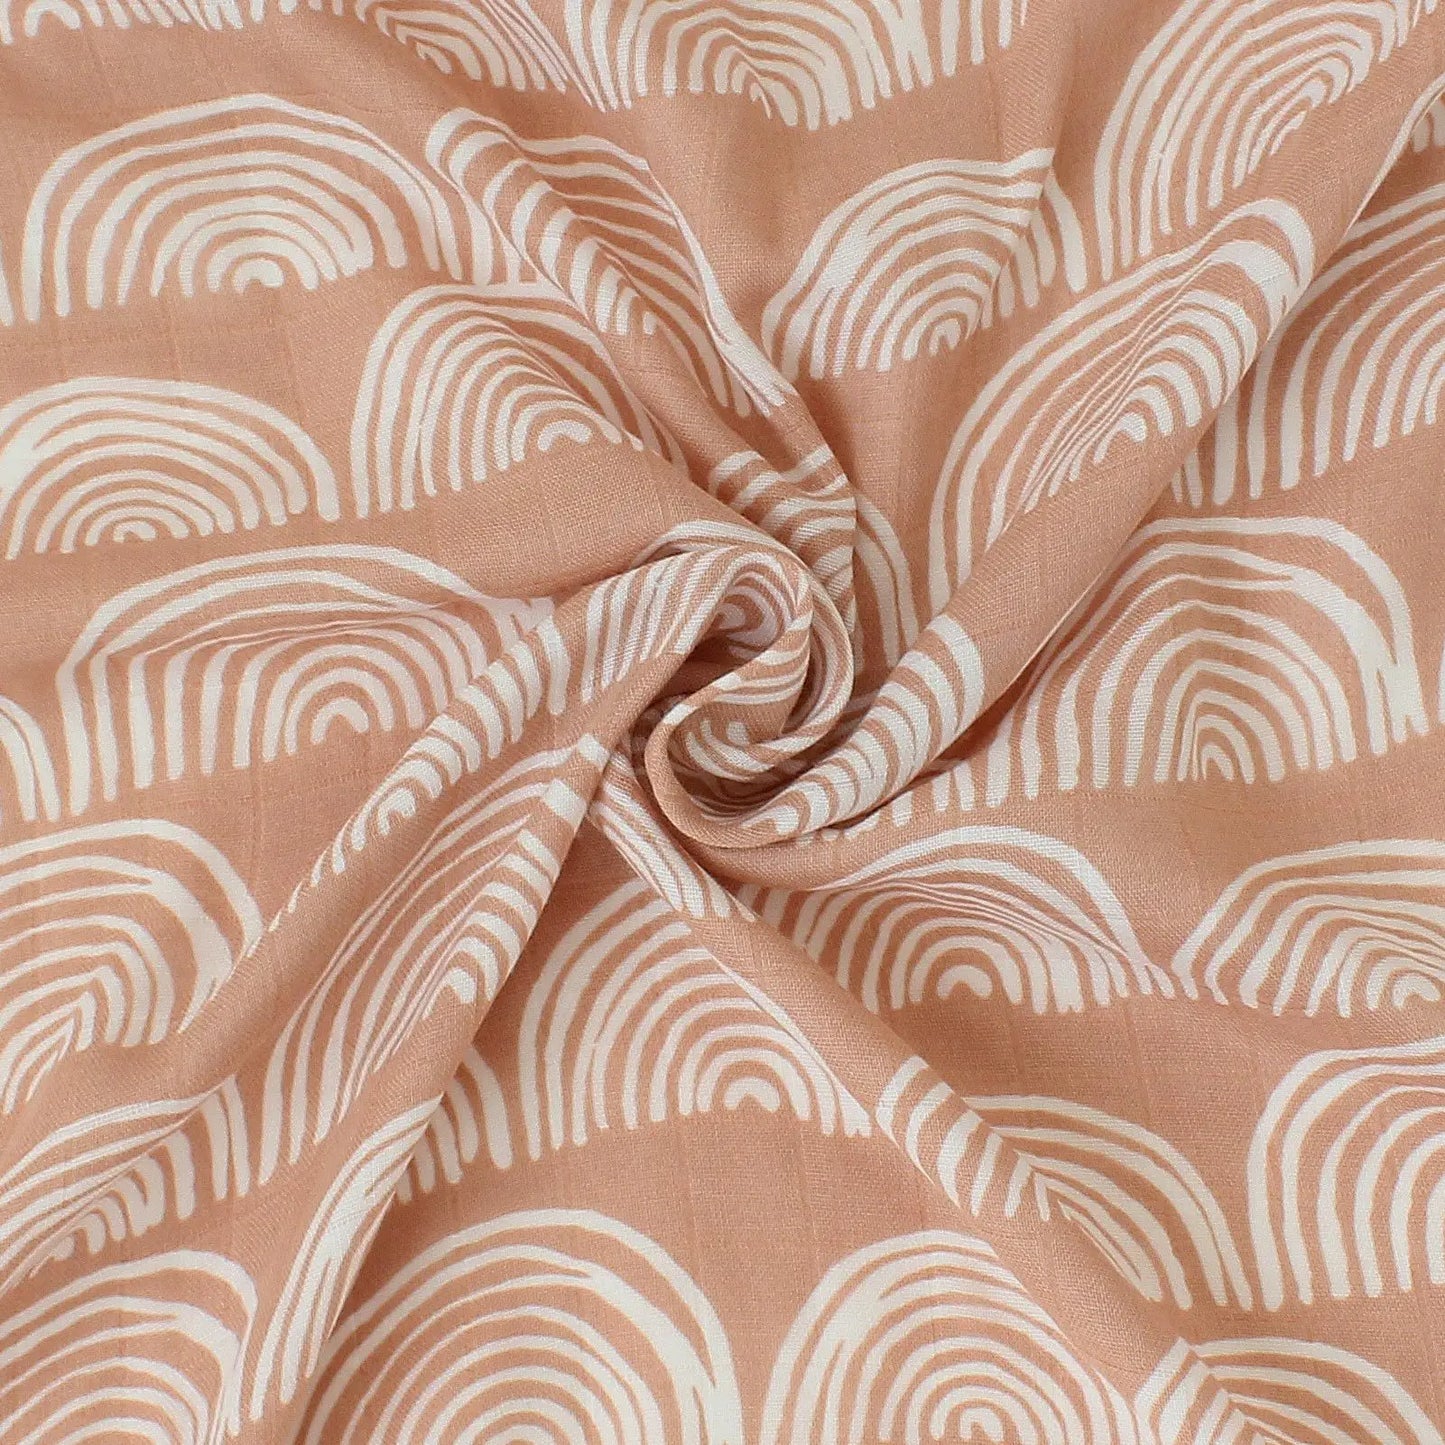 Élégant tissu Lange Bébé en Bambou & Coton avec un motif de vagues abstrait blanc, habilement drapé pour mettre en valeur la texture et le design, parfait pour la chambre d'un bébé. Créé par BABY PREMA.